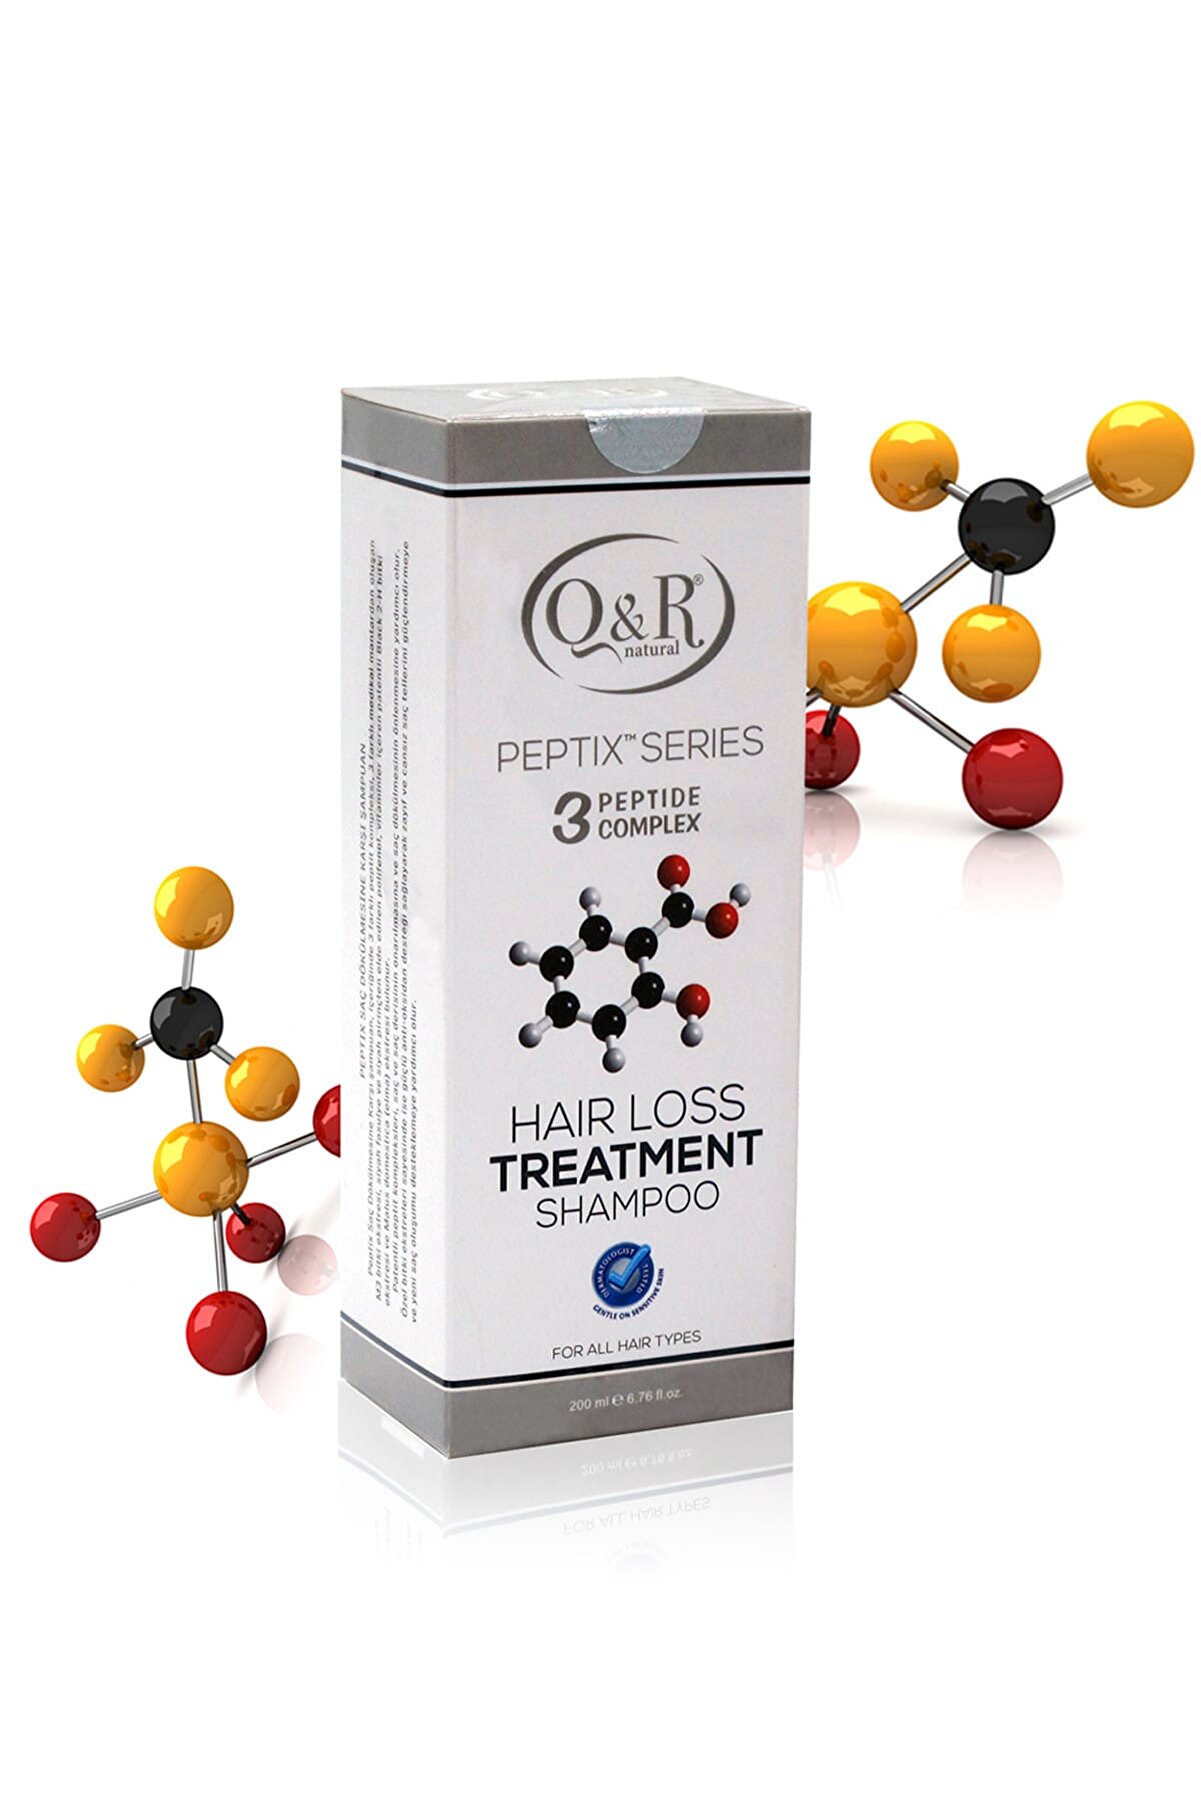 Q&R Peptix Haır Loss Treatment Shampoo 8681161400094